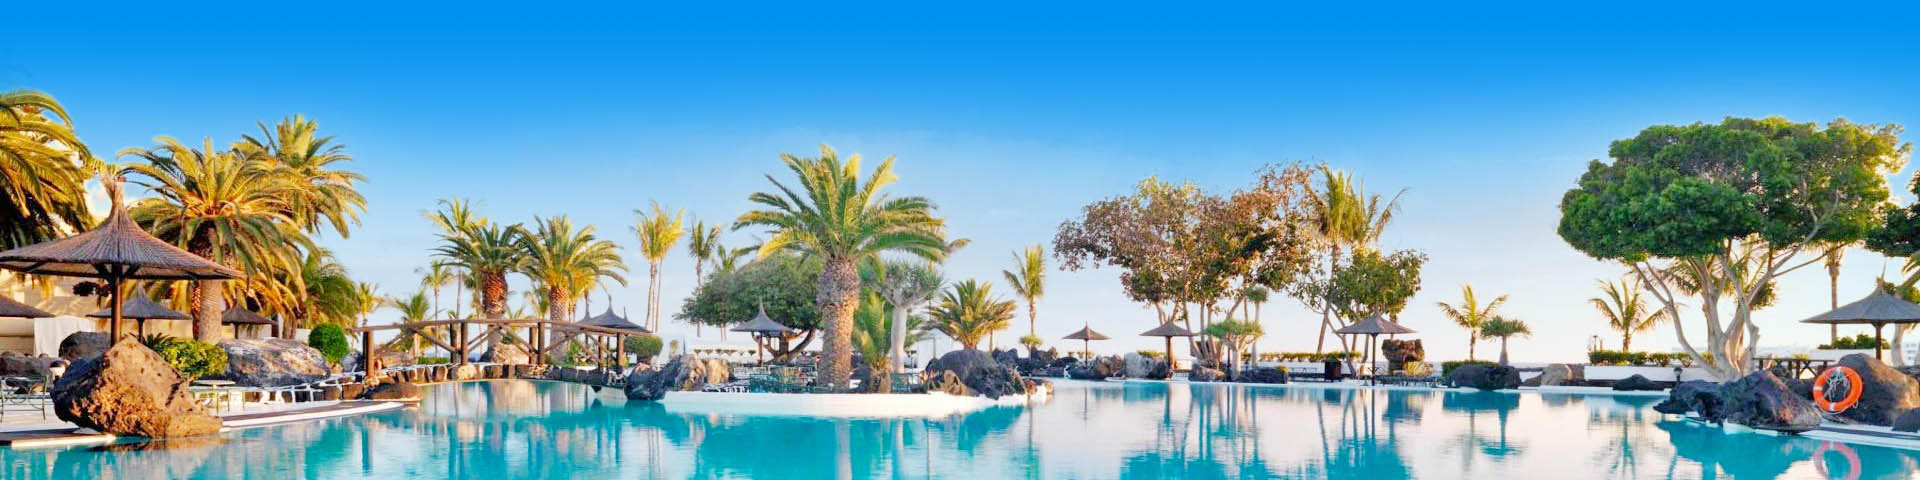 All inclusive hotel in Canarische Eilanden met groot zwembad